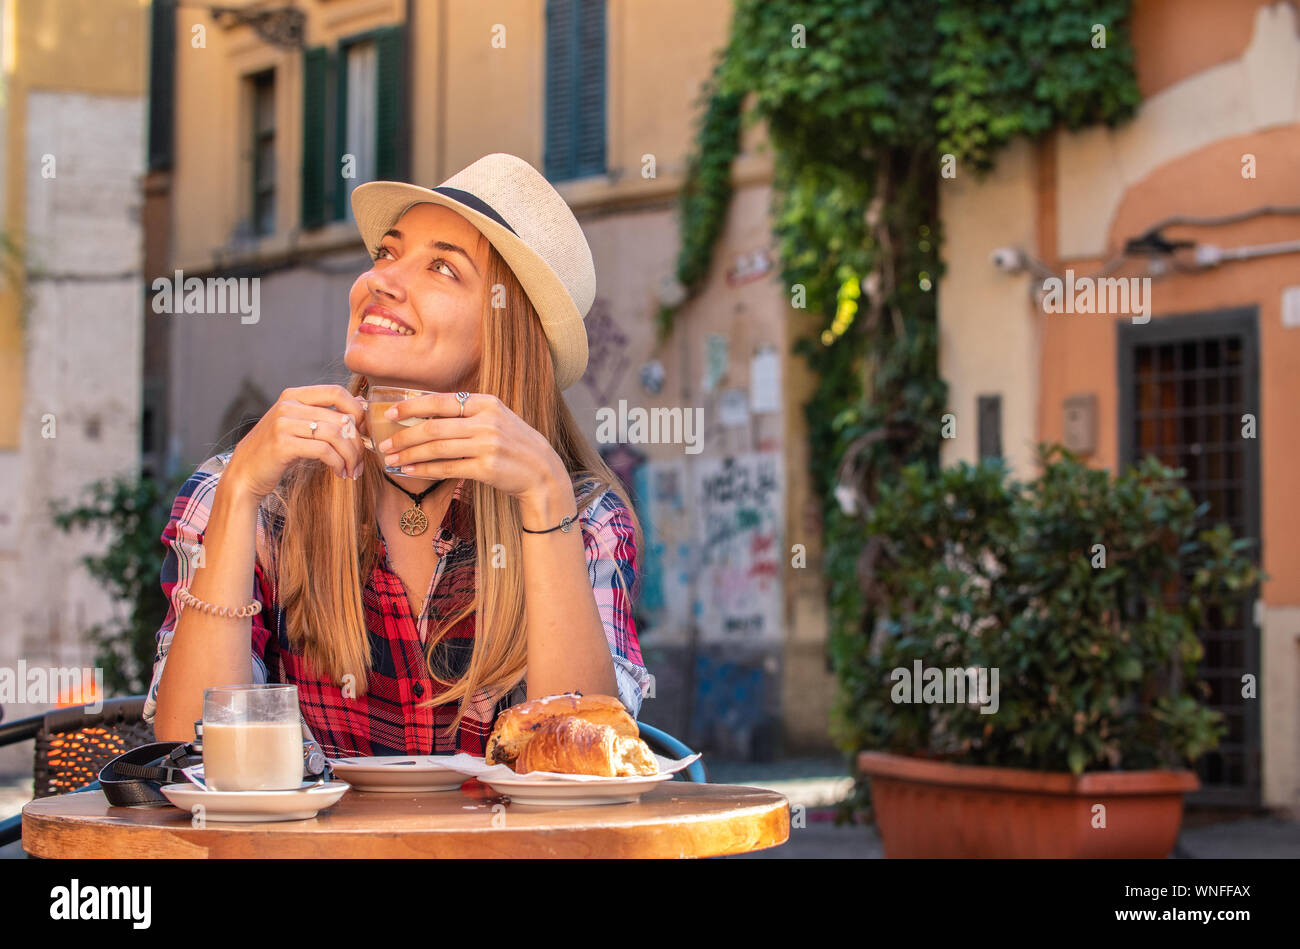 Giovane donna bionda con gli occhi blu di fare colazione nel bar in tipico stile italiano al di fuori nel quartiere storico Trastevere a Roma, Italia. Cappuccino Foto Stock